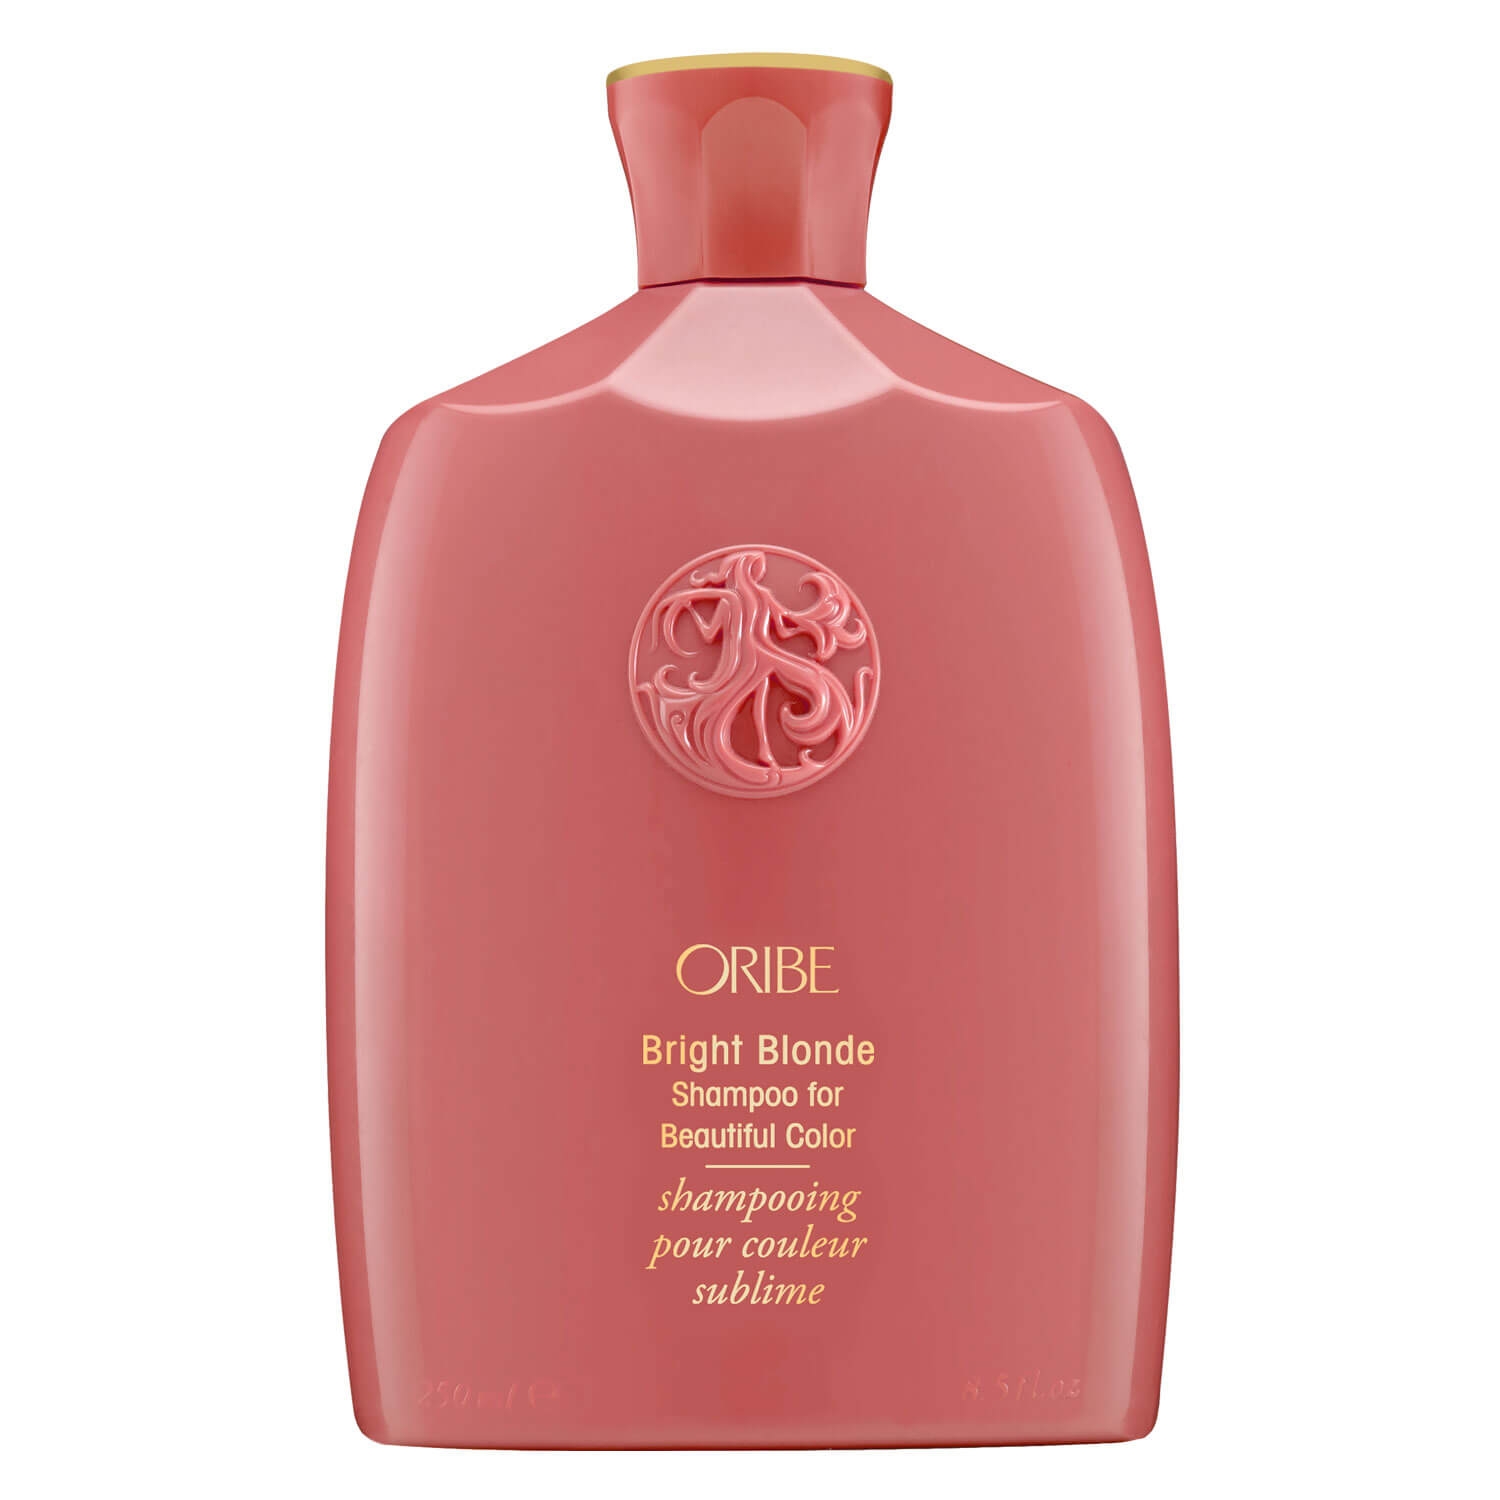 Produktbild von Oribe Care - Bright Blonde Shampoo